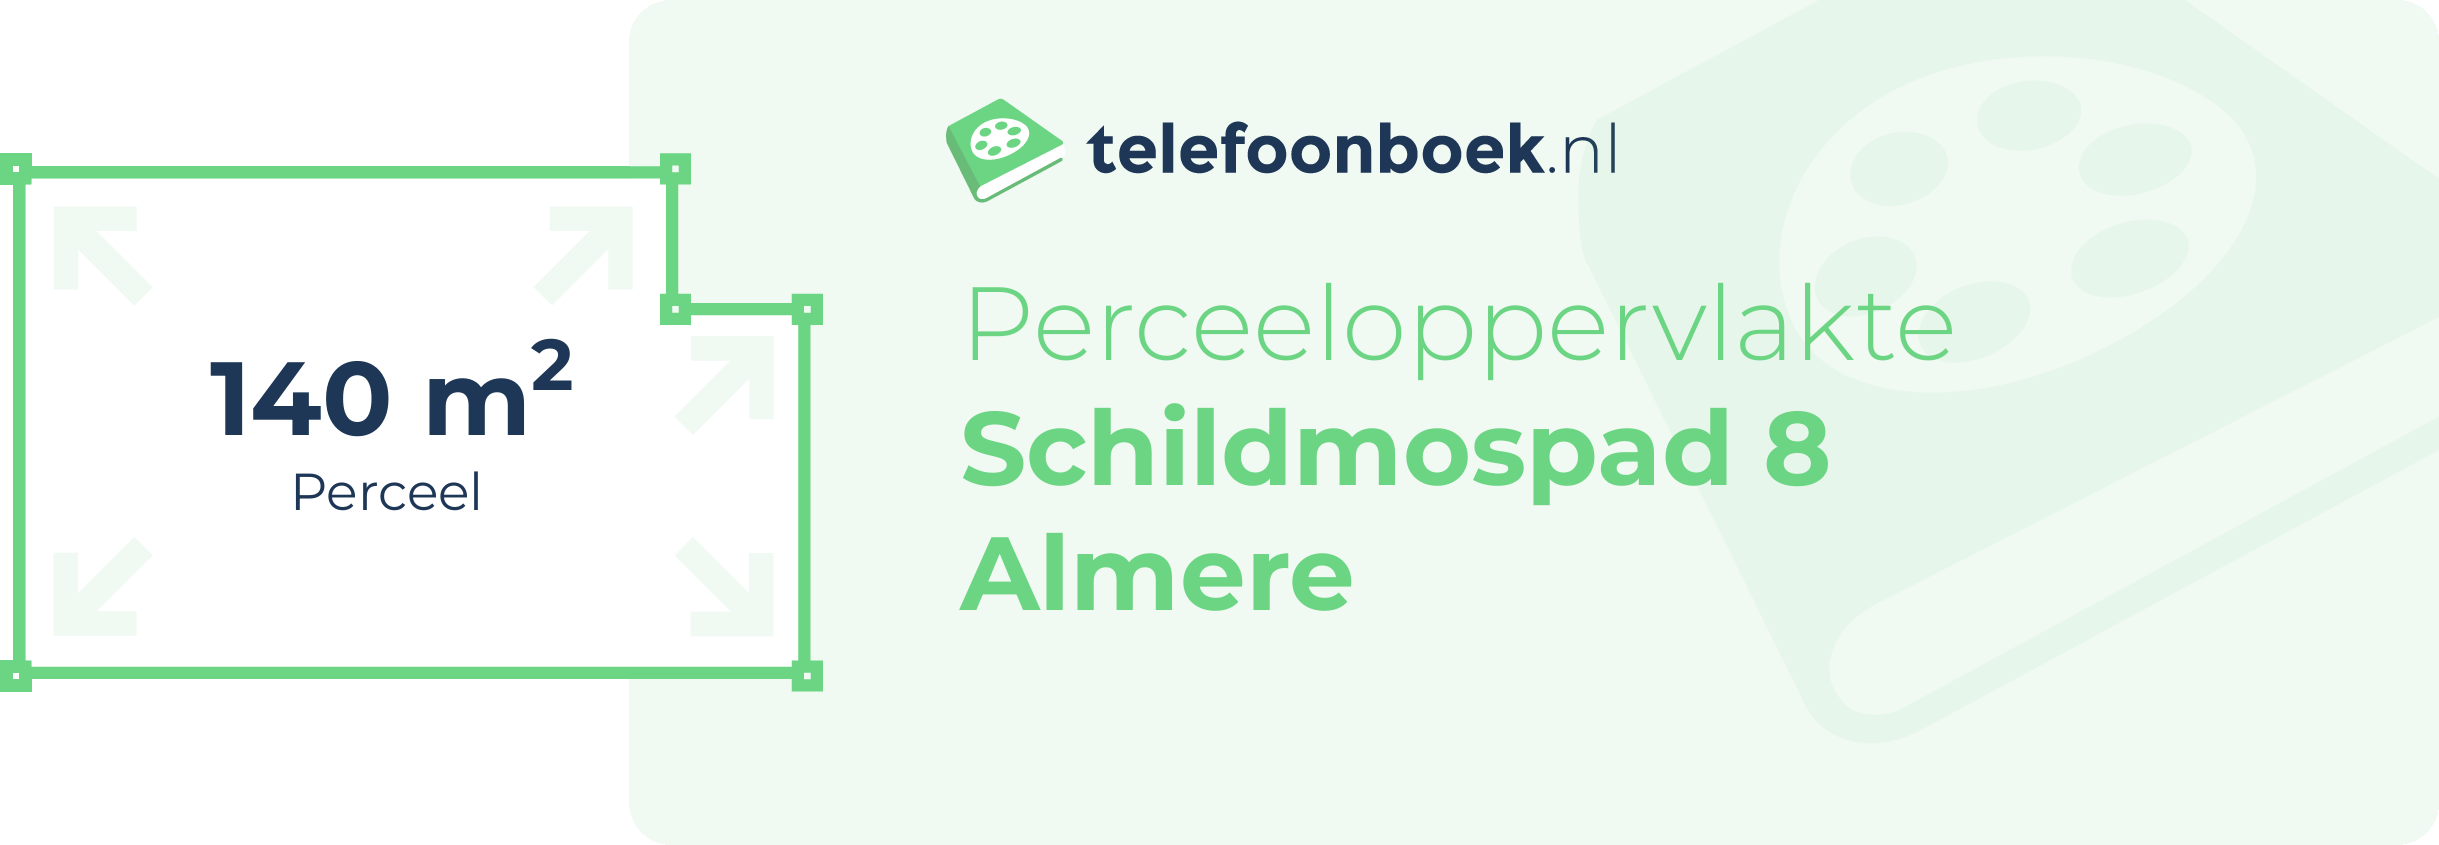 Perceeloppervlakte Schildmospad 8 Almere